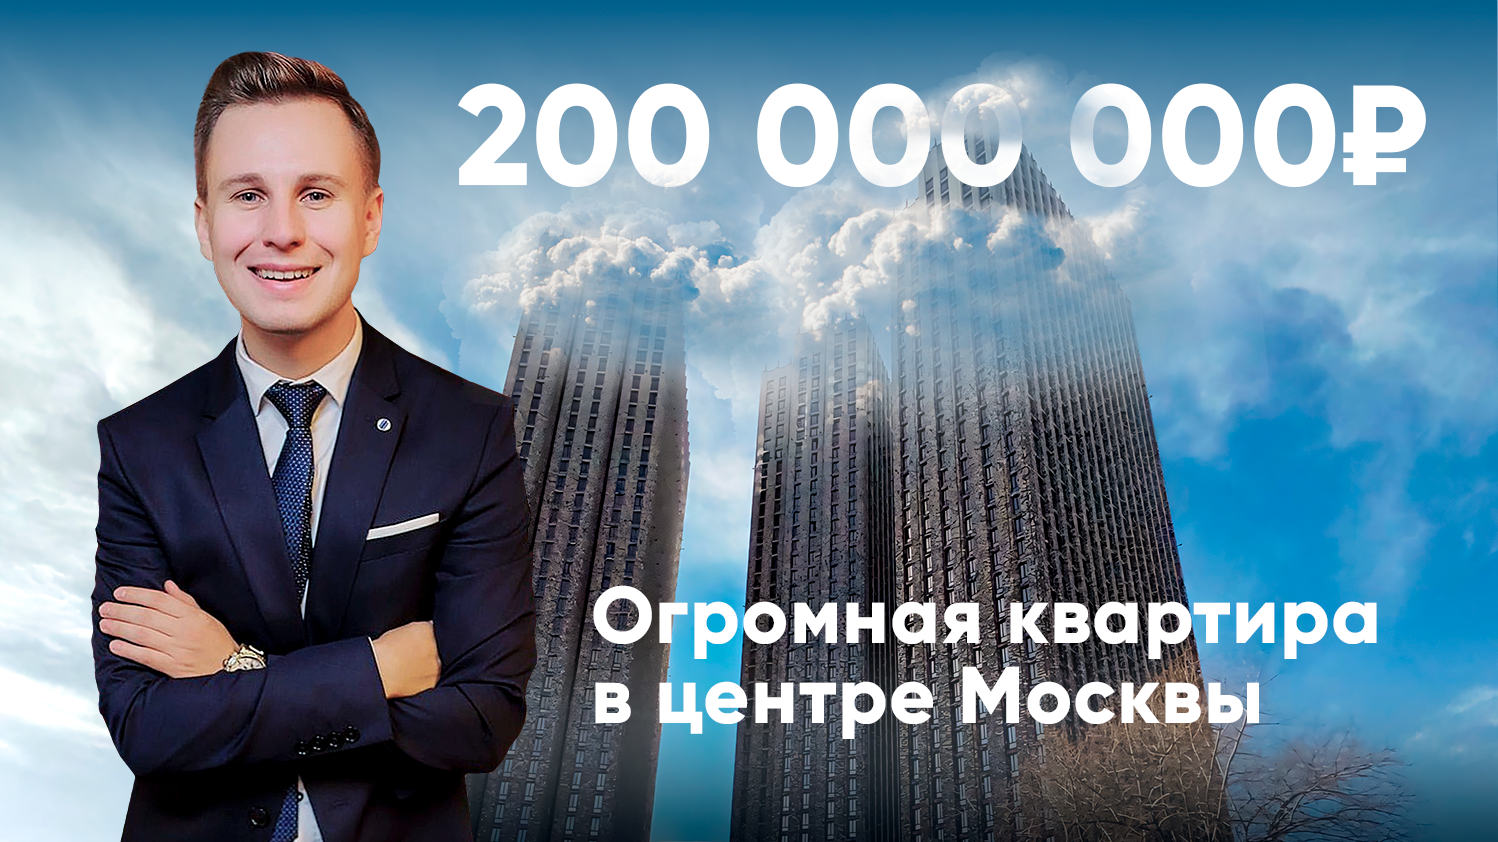 ОГРОМНАЯ квартира в центре Москвы за 200 миллионов / Обзор 4 в 1